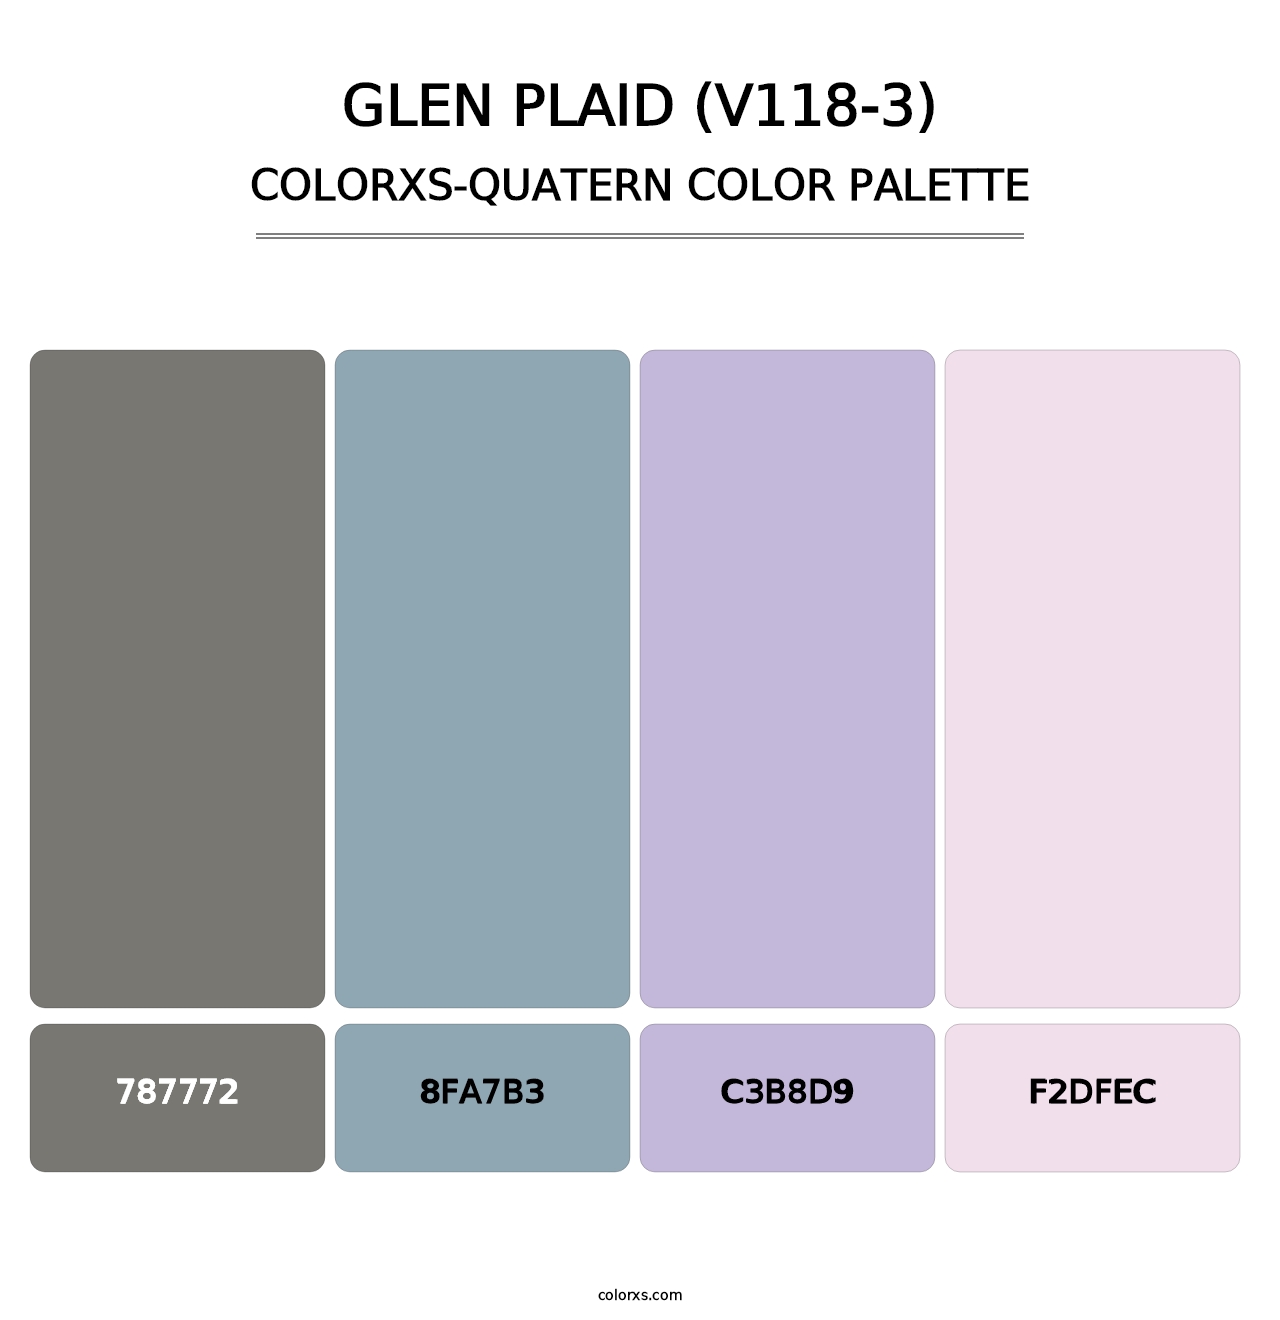 Glen Plaid (V118-3) - Colorxs Quatern Palette